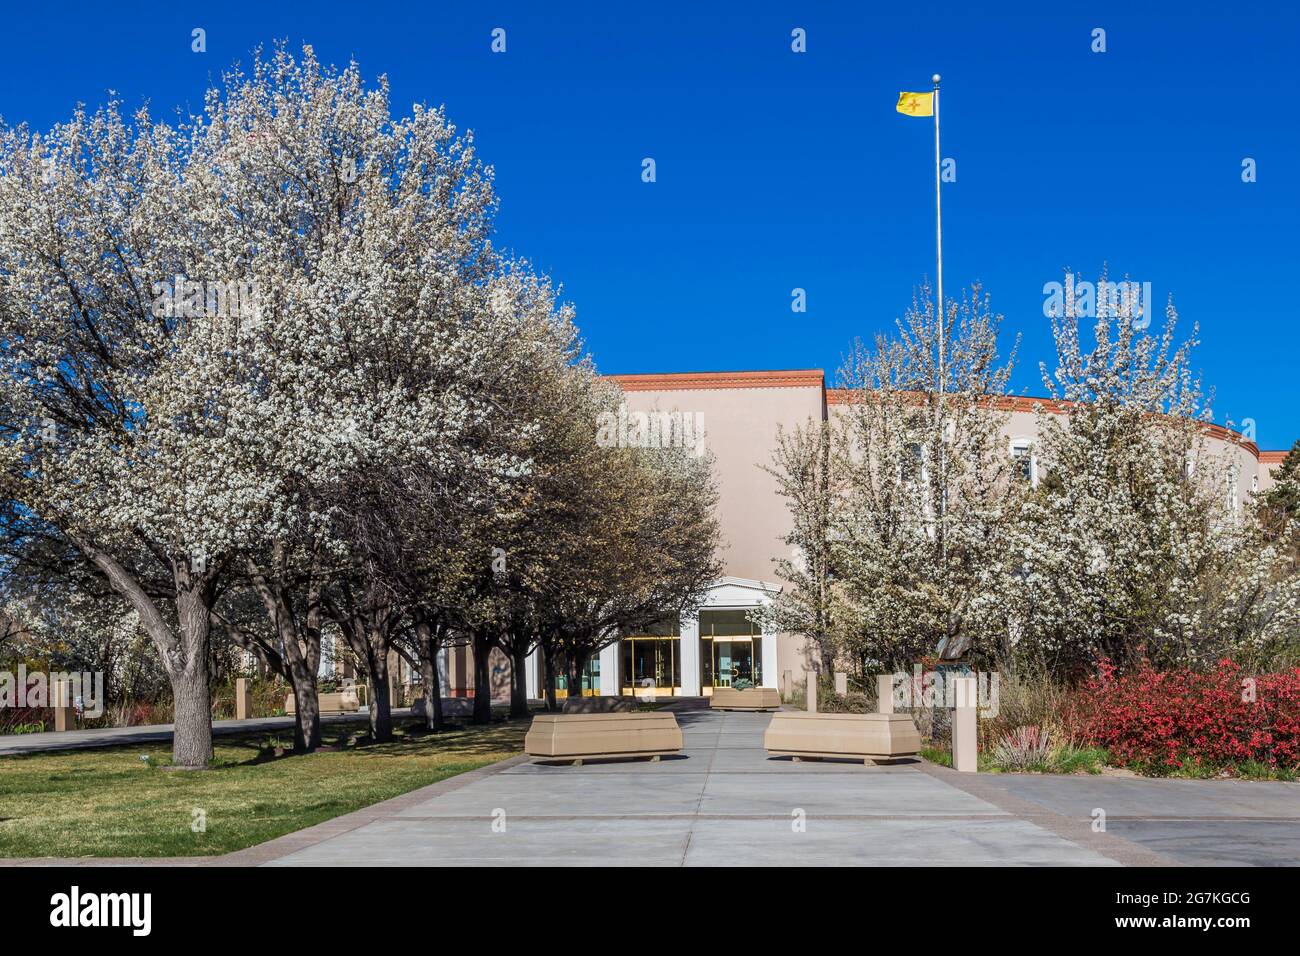 Santa Fe, Nuevo México, EE.UU., 7 de abril de 2014: Capital del Estado, edificio, con árboles de pera en flor. Foto de stock